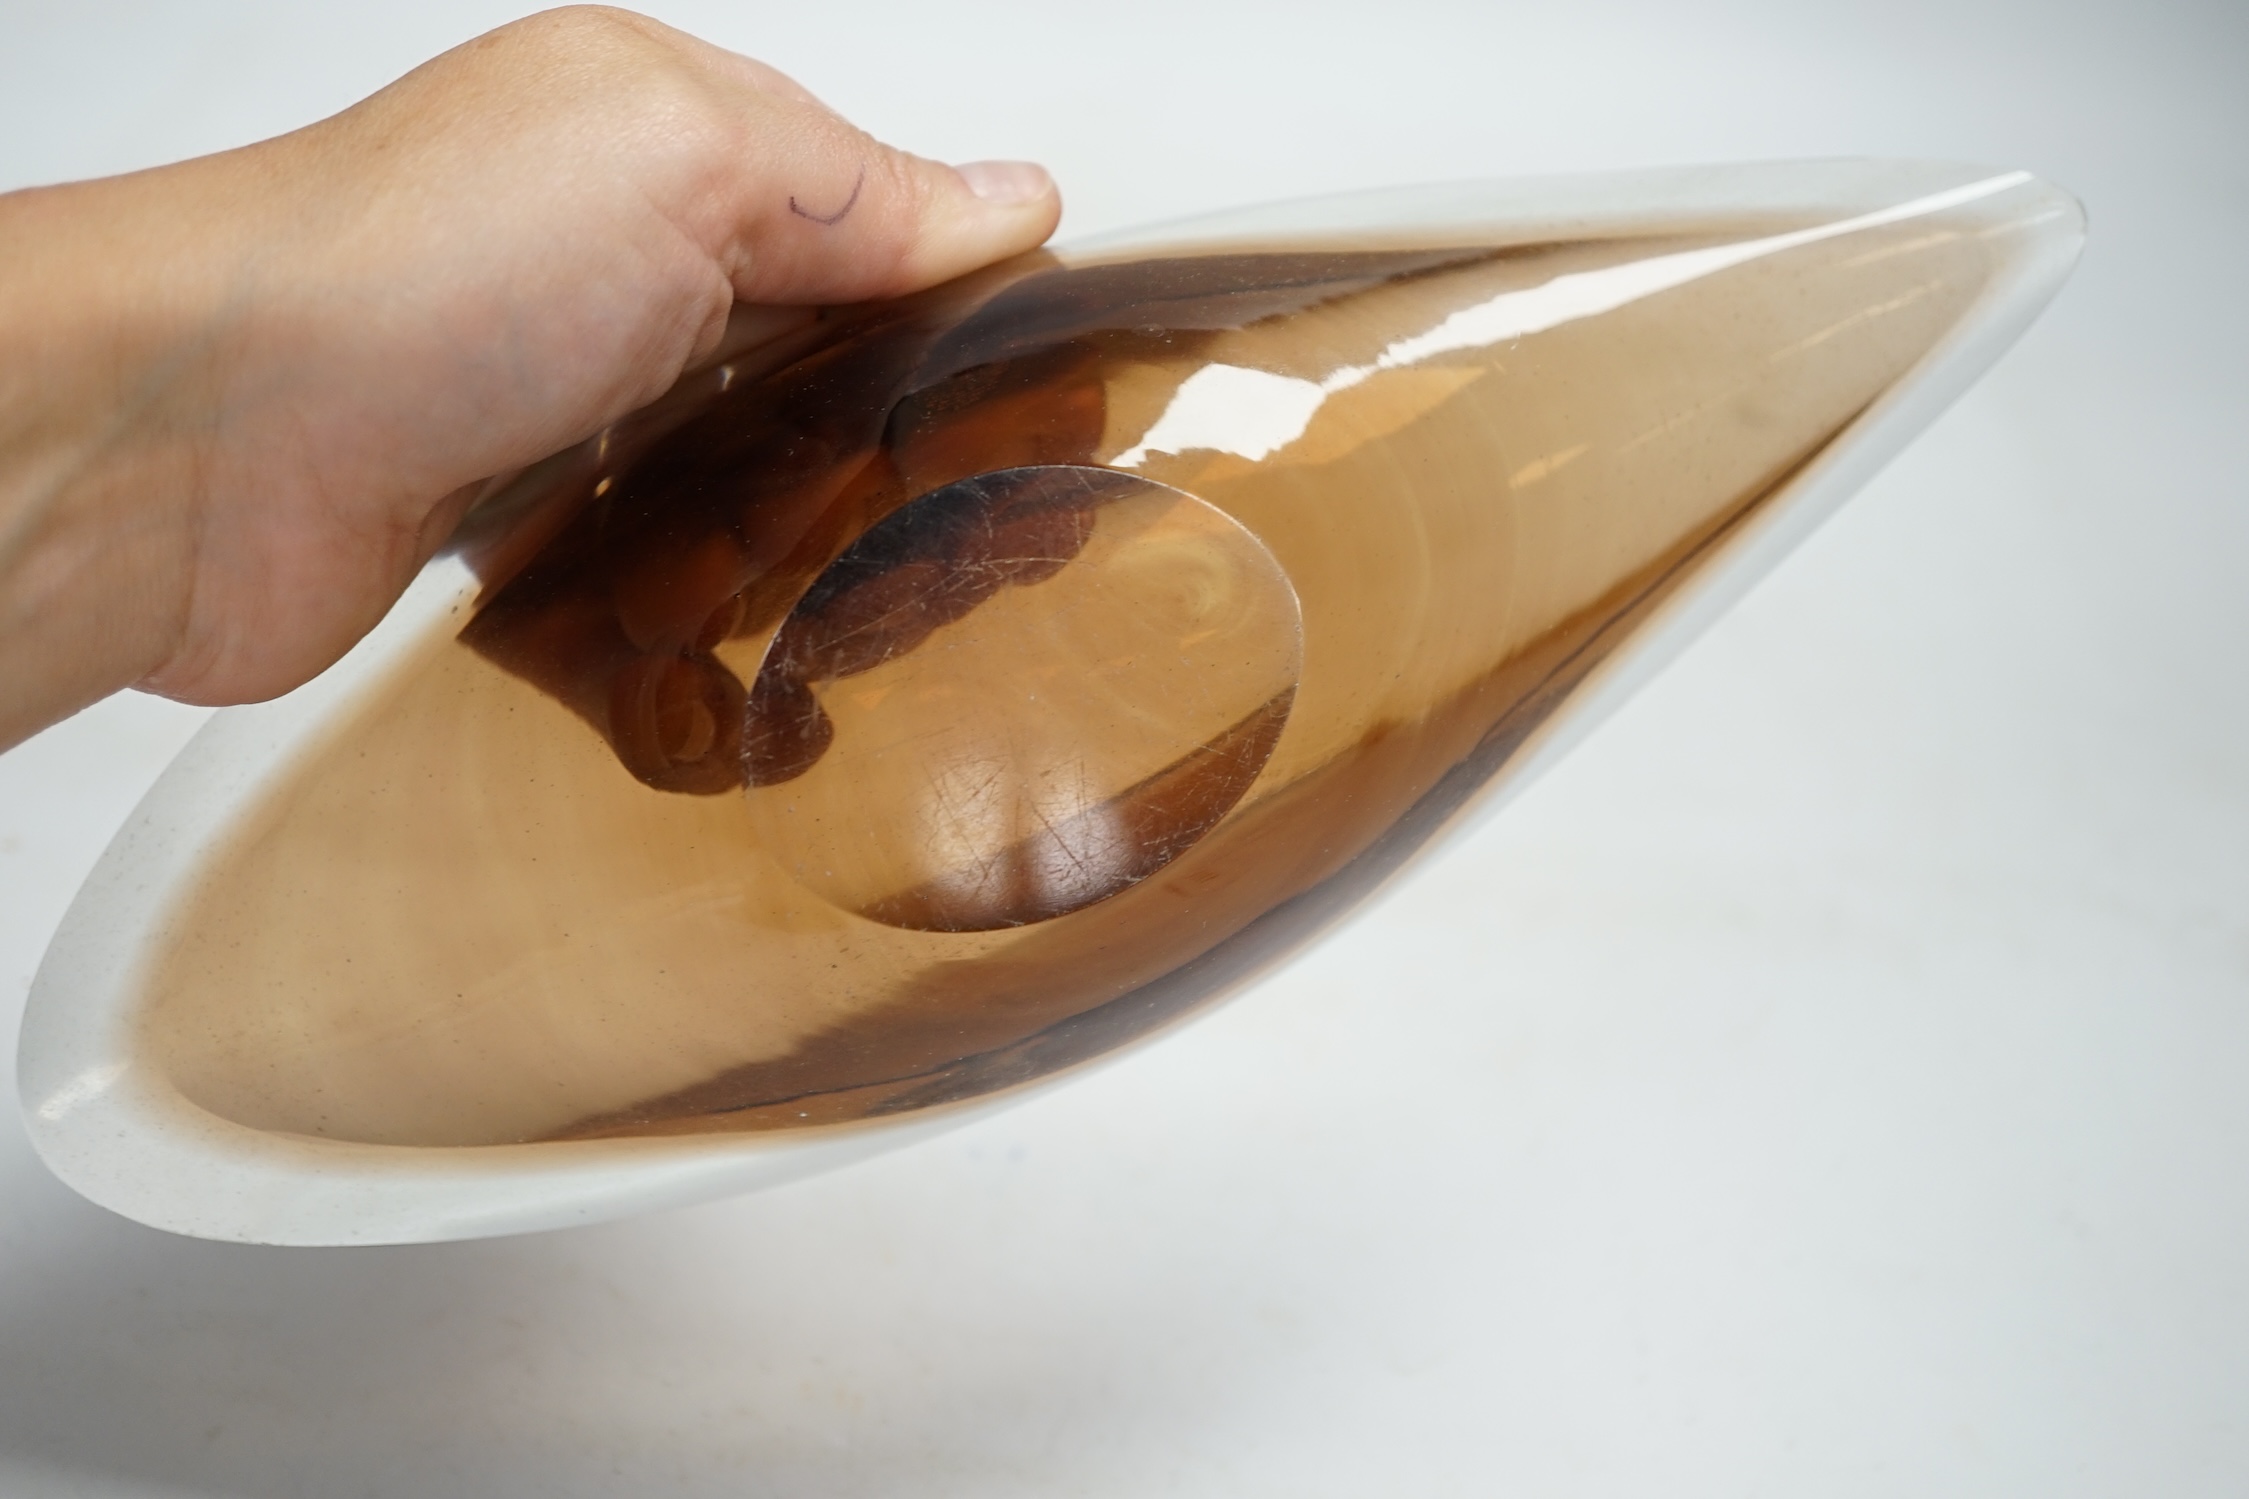 Kaj Franck for Nuutajarvi Notsjo, an art glass 'willow leaf' bowl, 26.5cm long. Condition - good